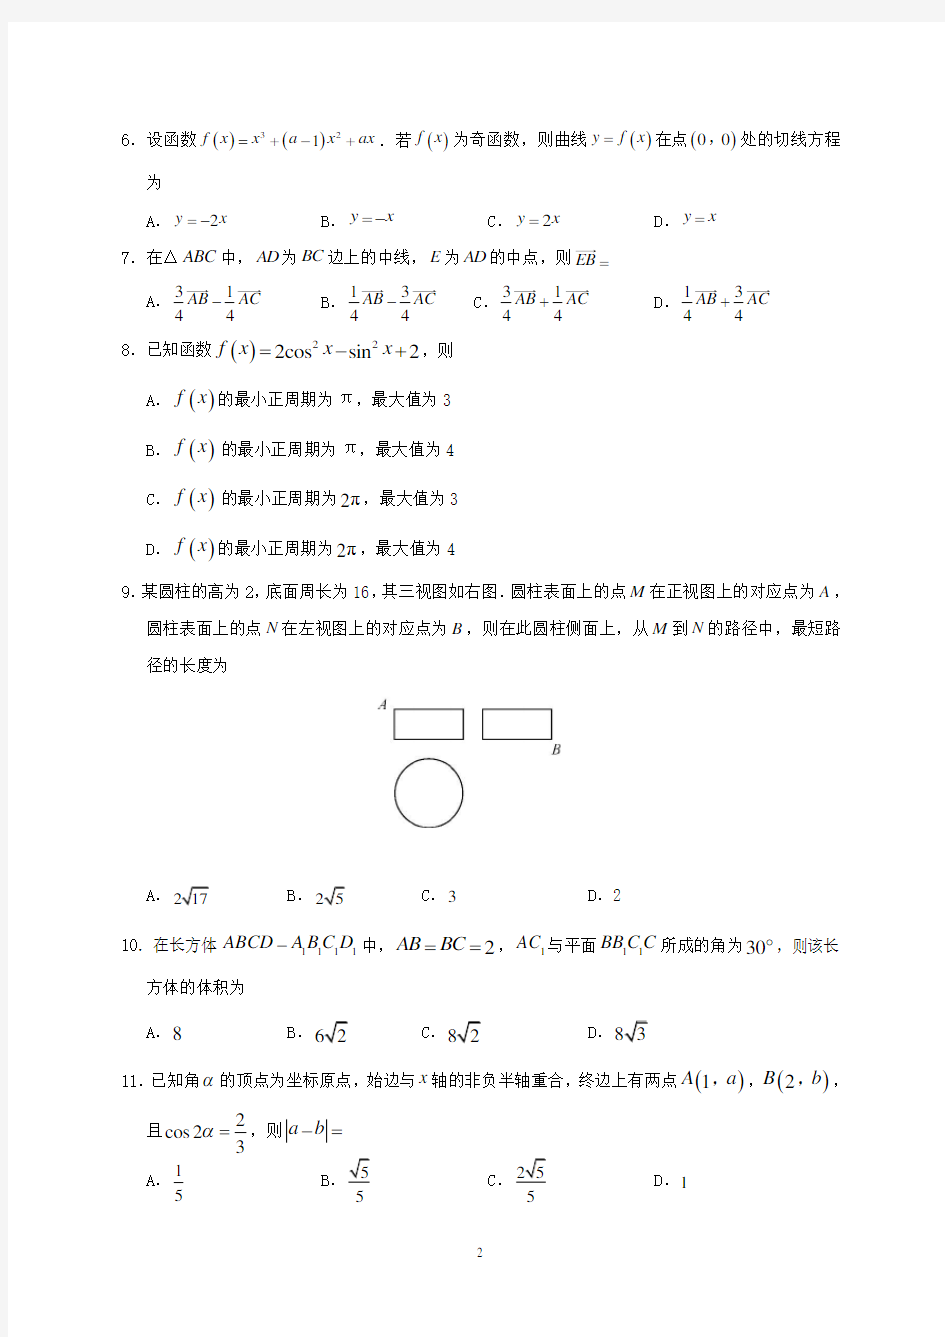 2018年湖南省高考文科数学试题与答案